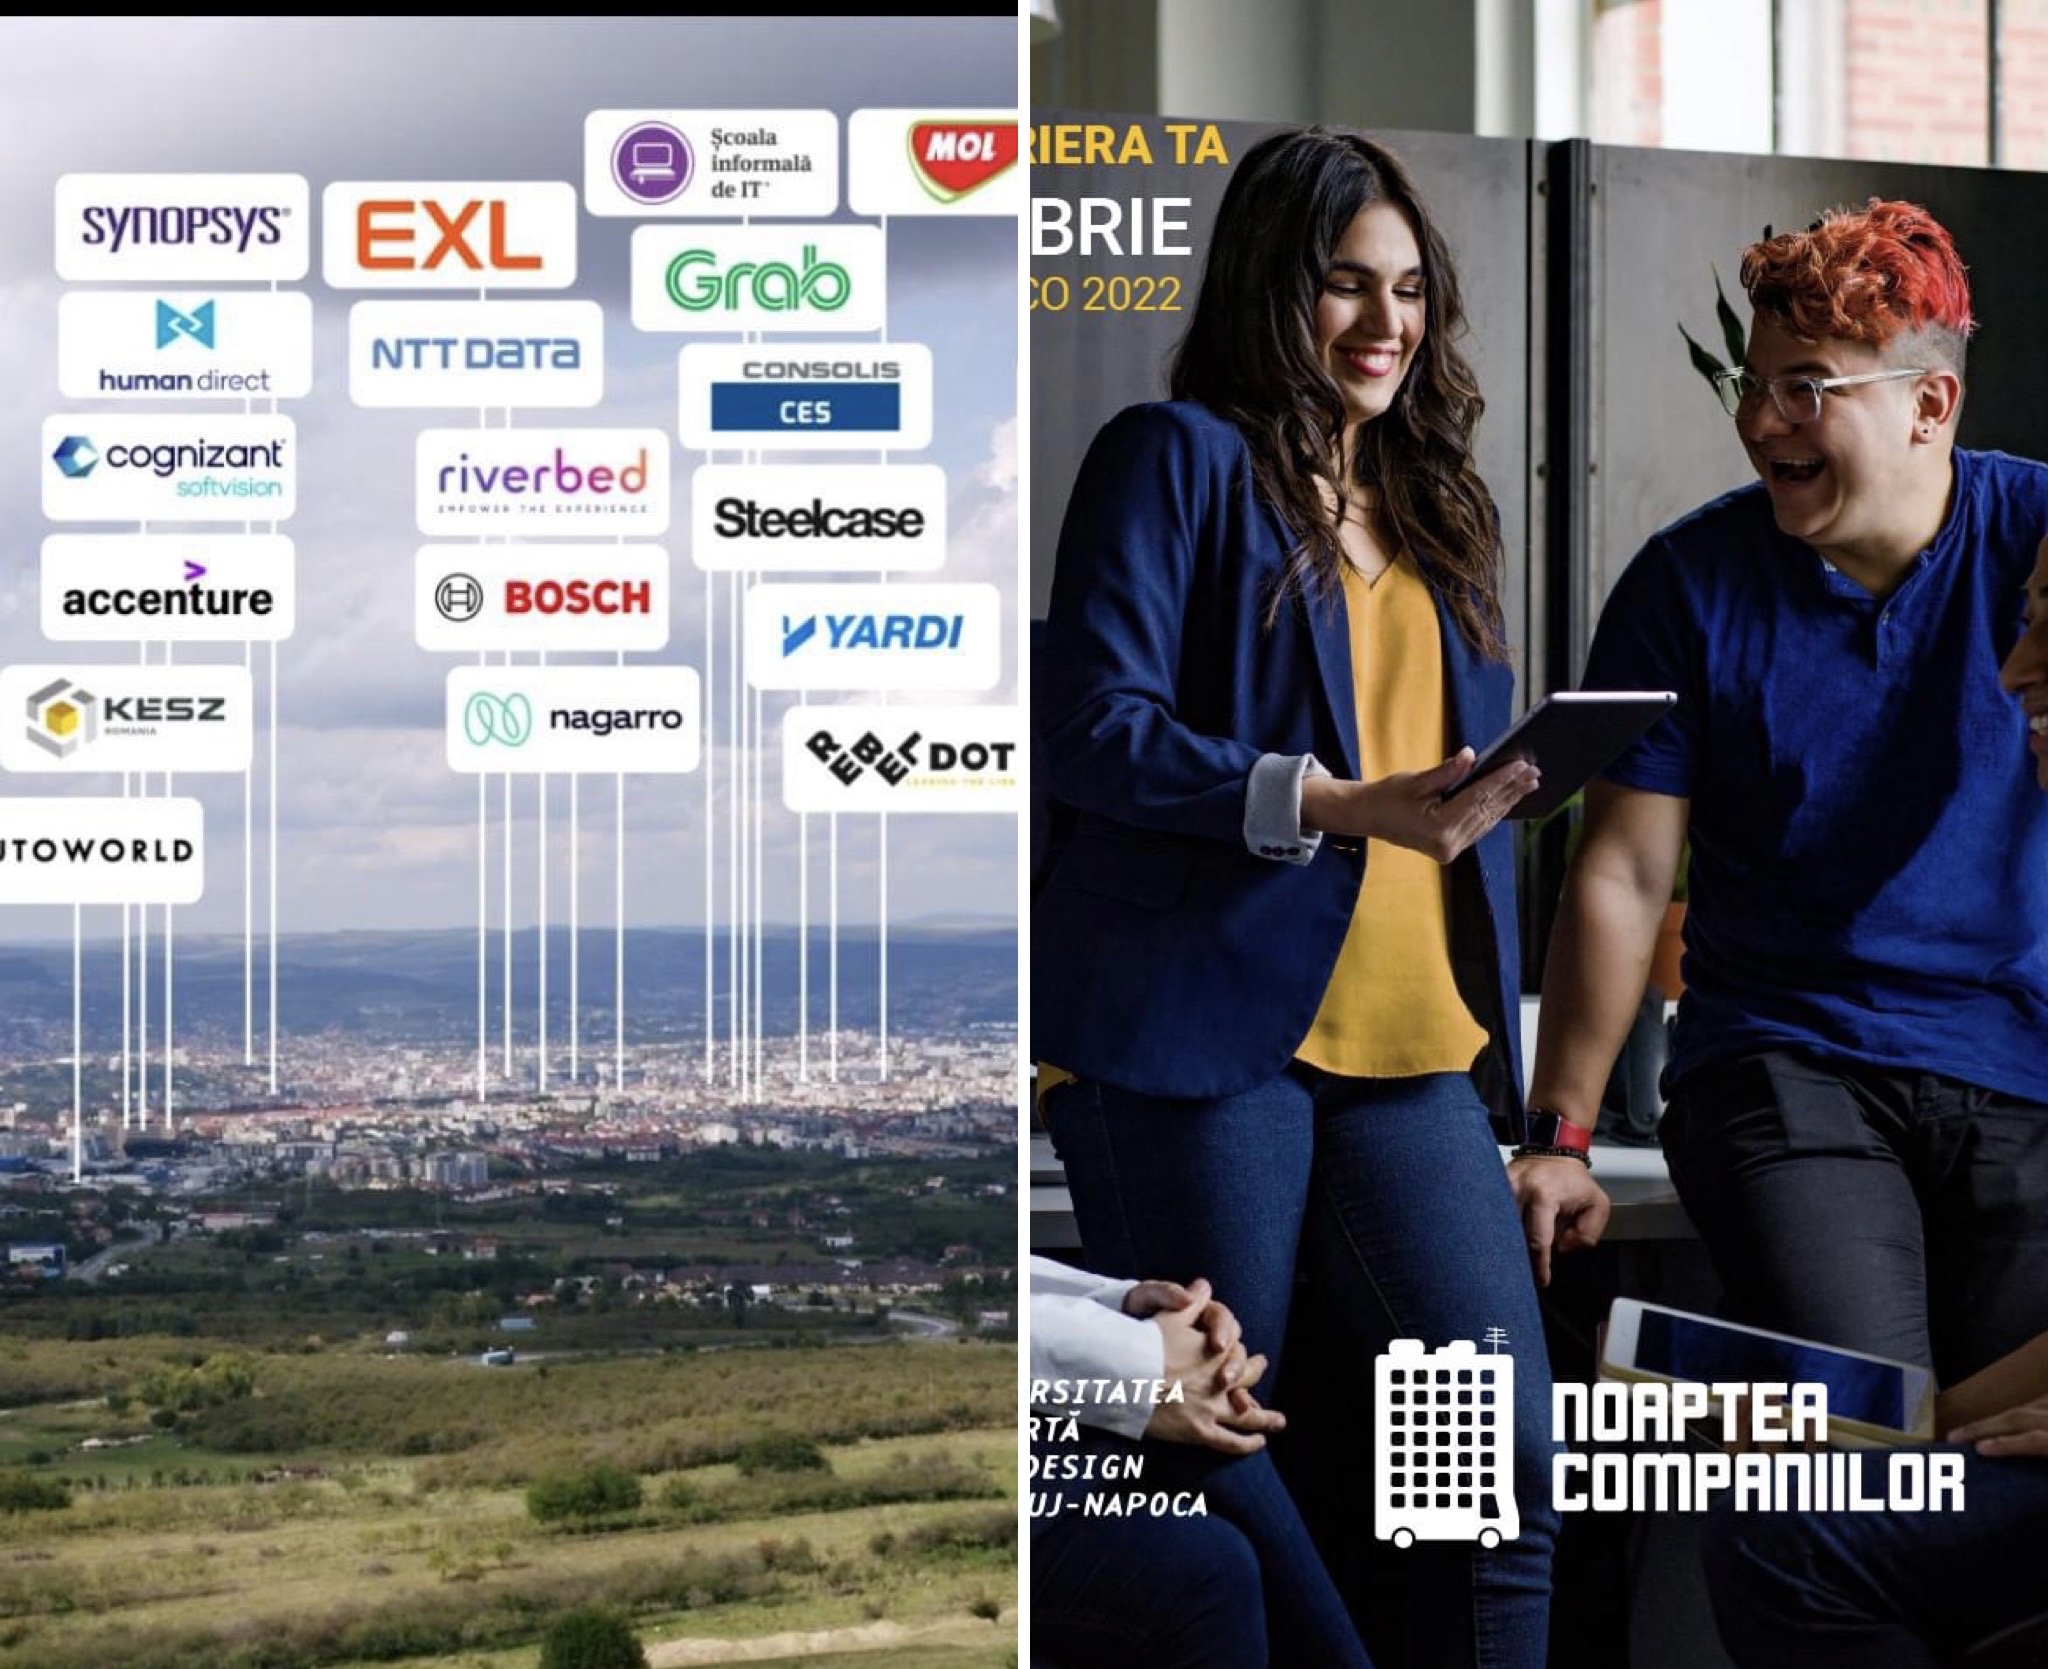 Peste 25 de companii din Cluj își vor prezenta joburile disponibile la “Noaptea Companiilor”. VIDEO